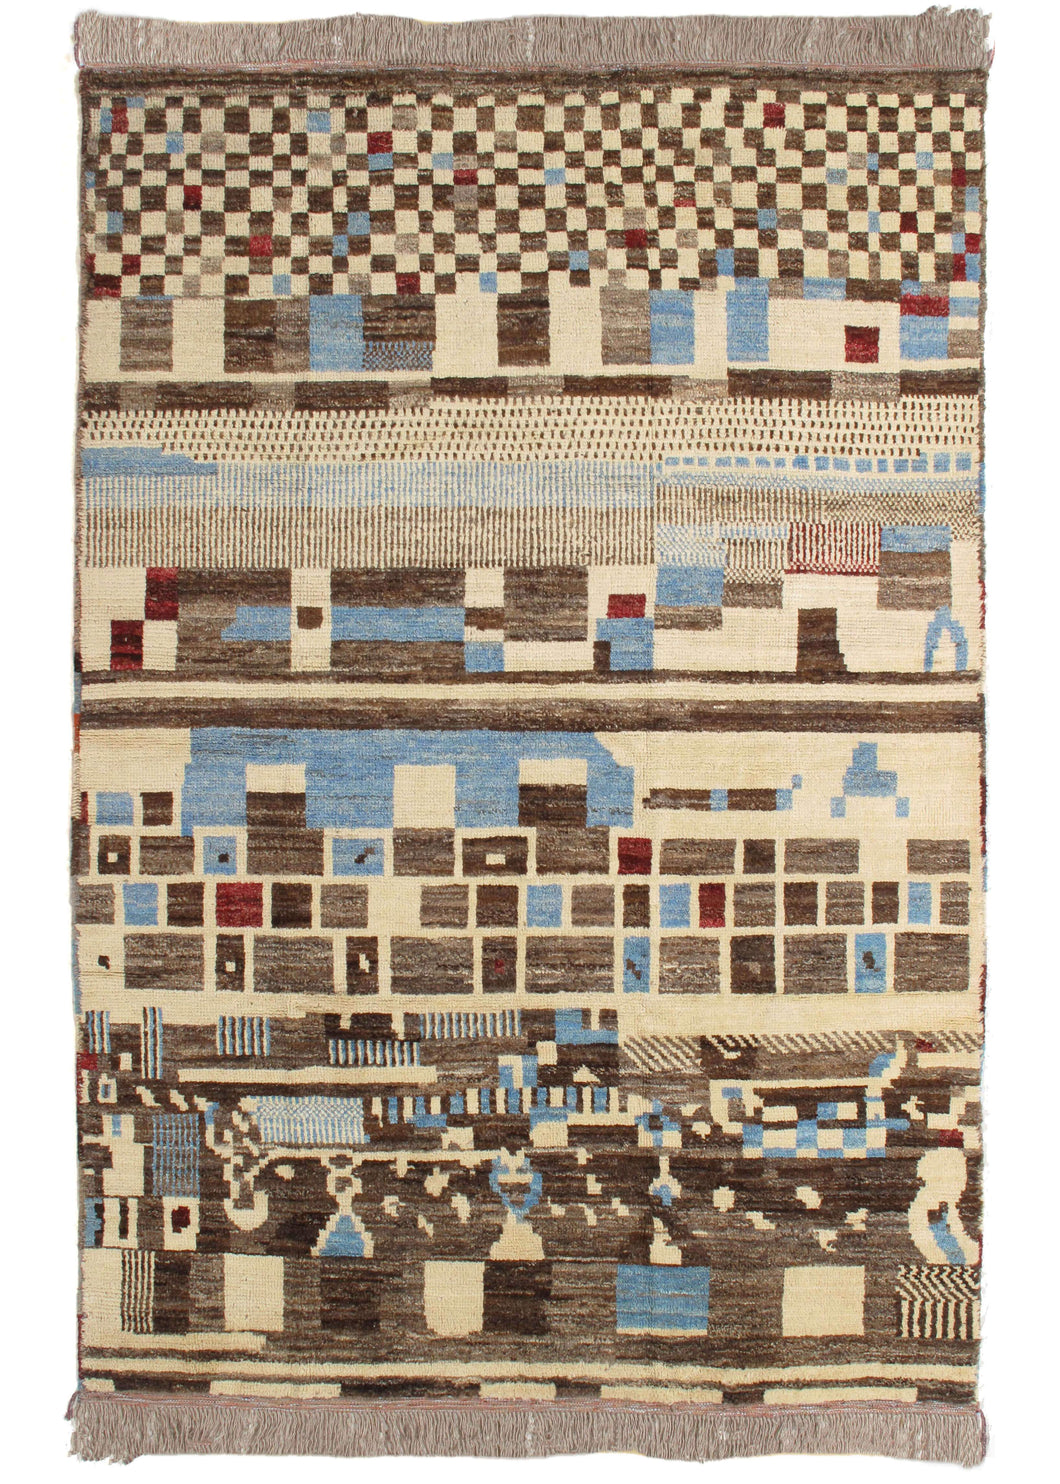 Afghani handwoven Moroccan style shag modern rug